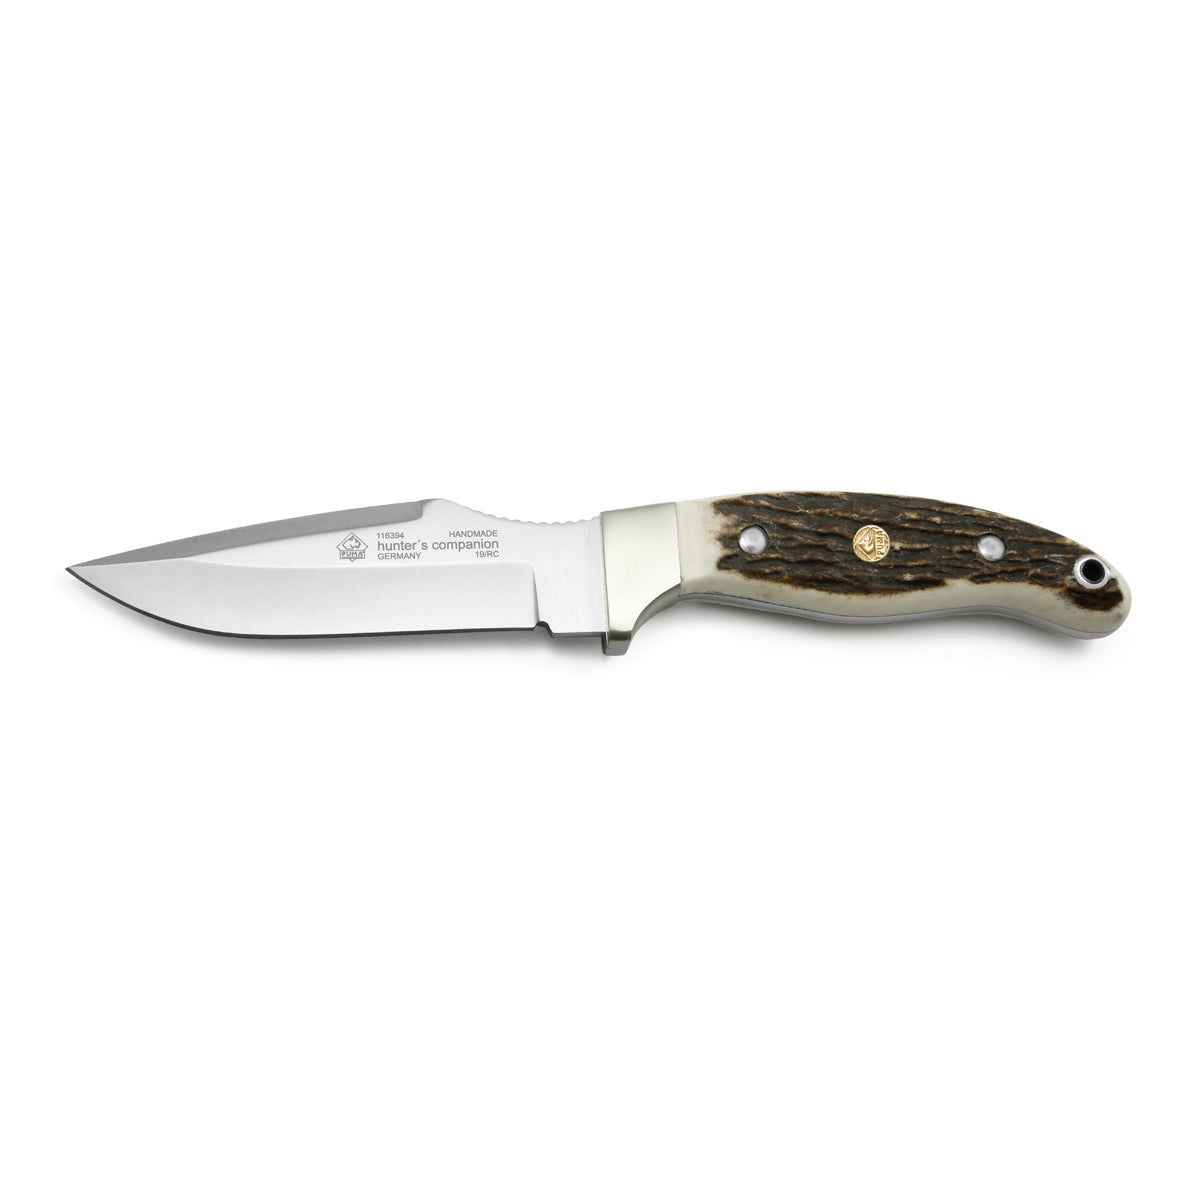 PUMA Hunters Companion Knife 